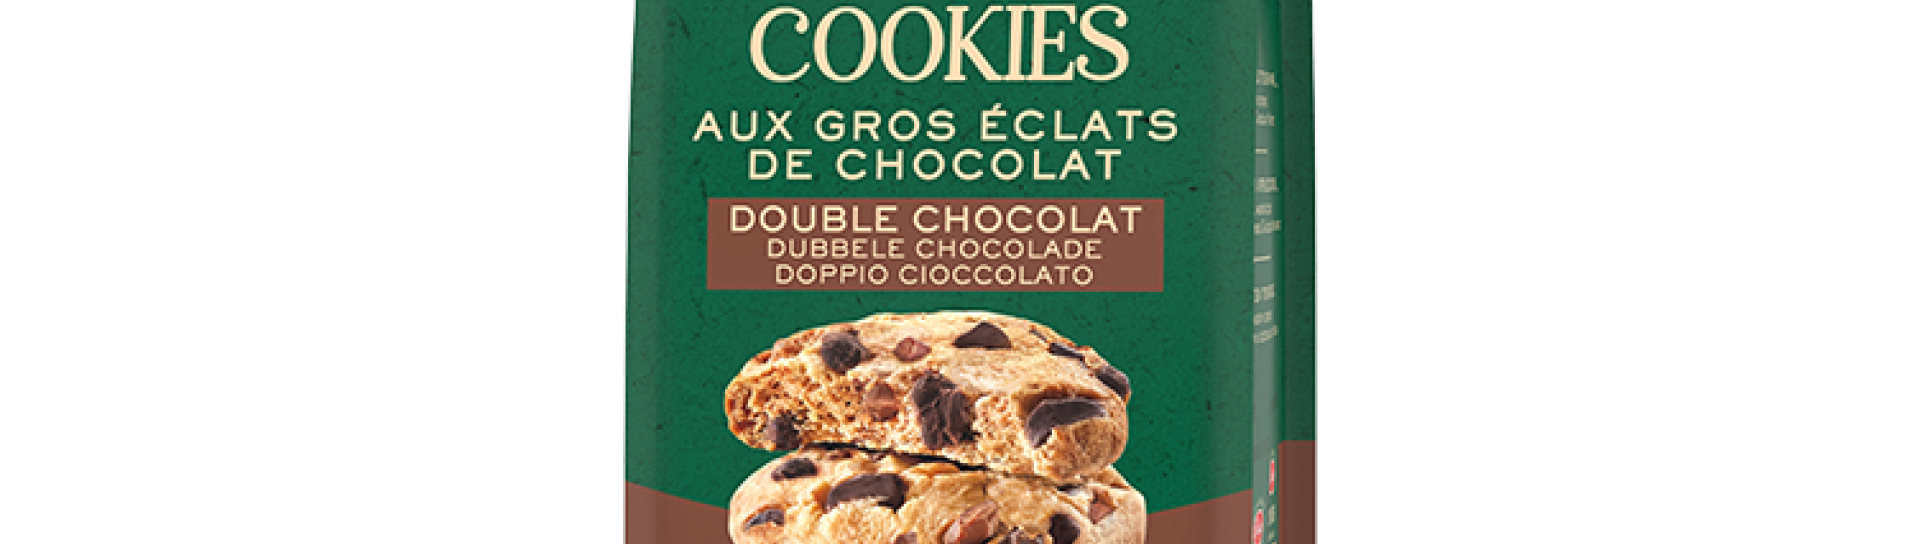 Cookies aux gros éclats - Double Chocolat